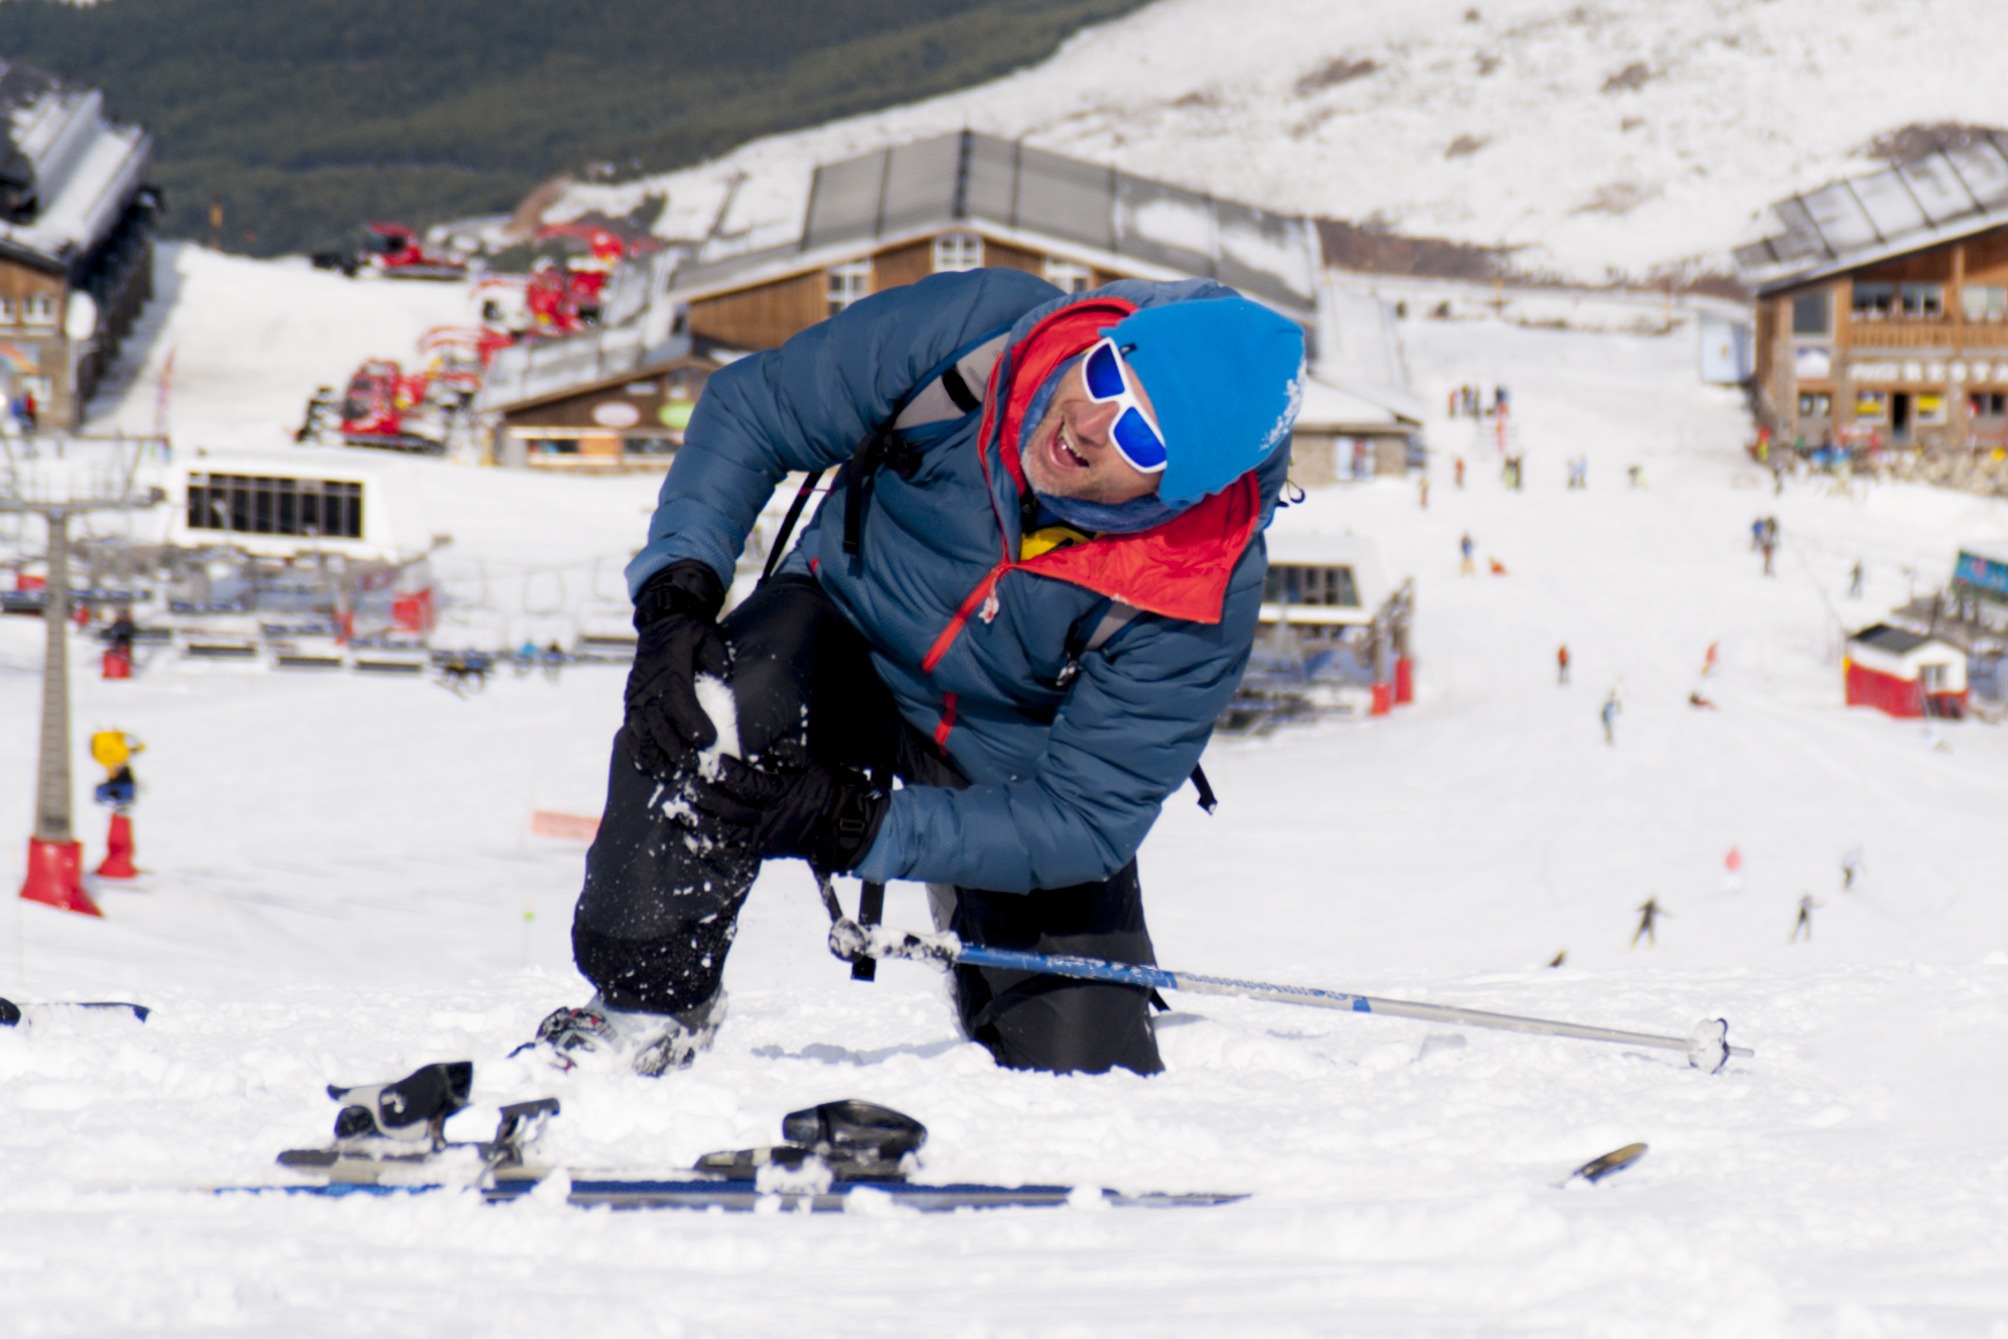 Man lying on snow ski crash injured knee in pain